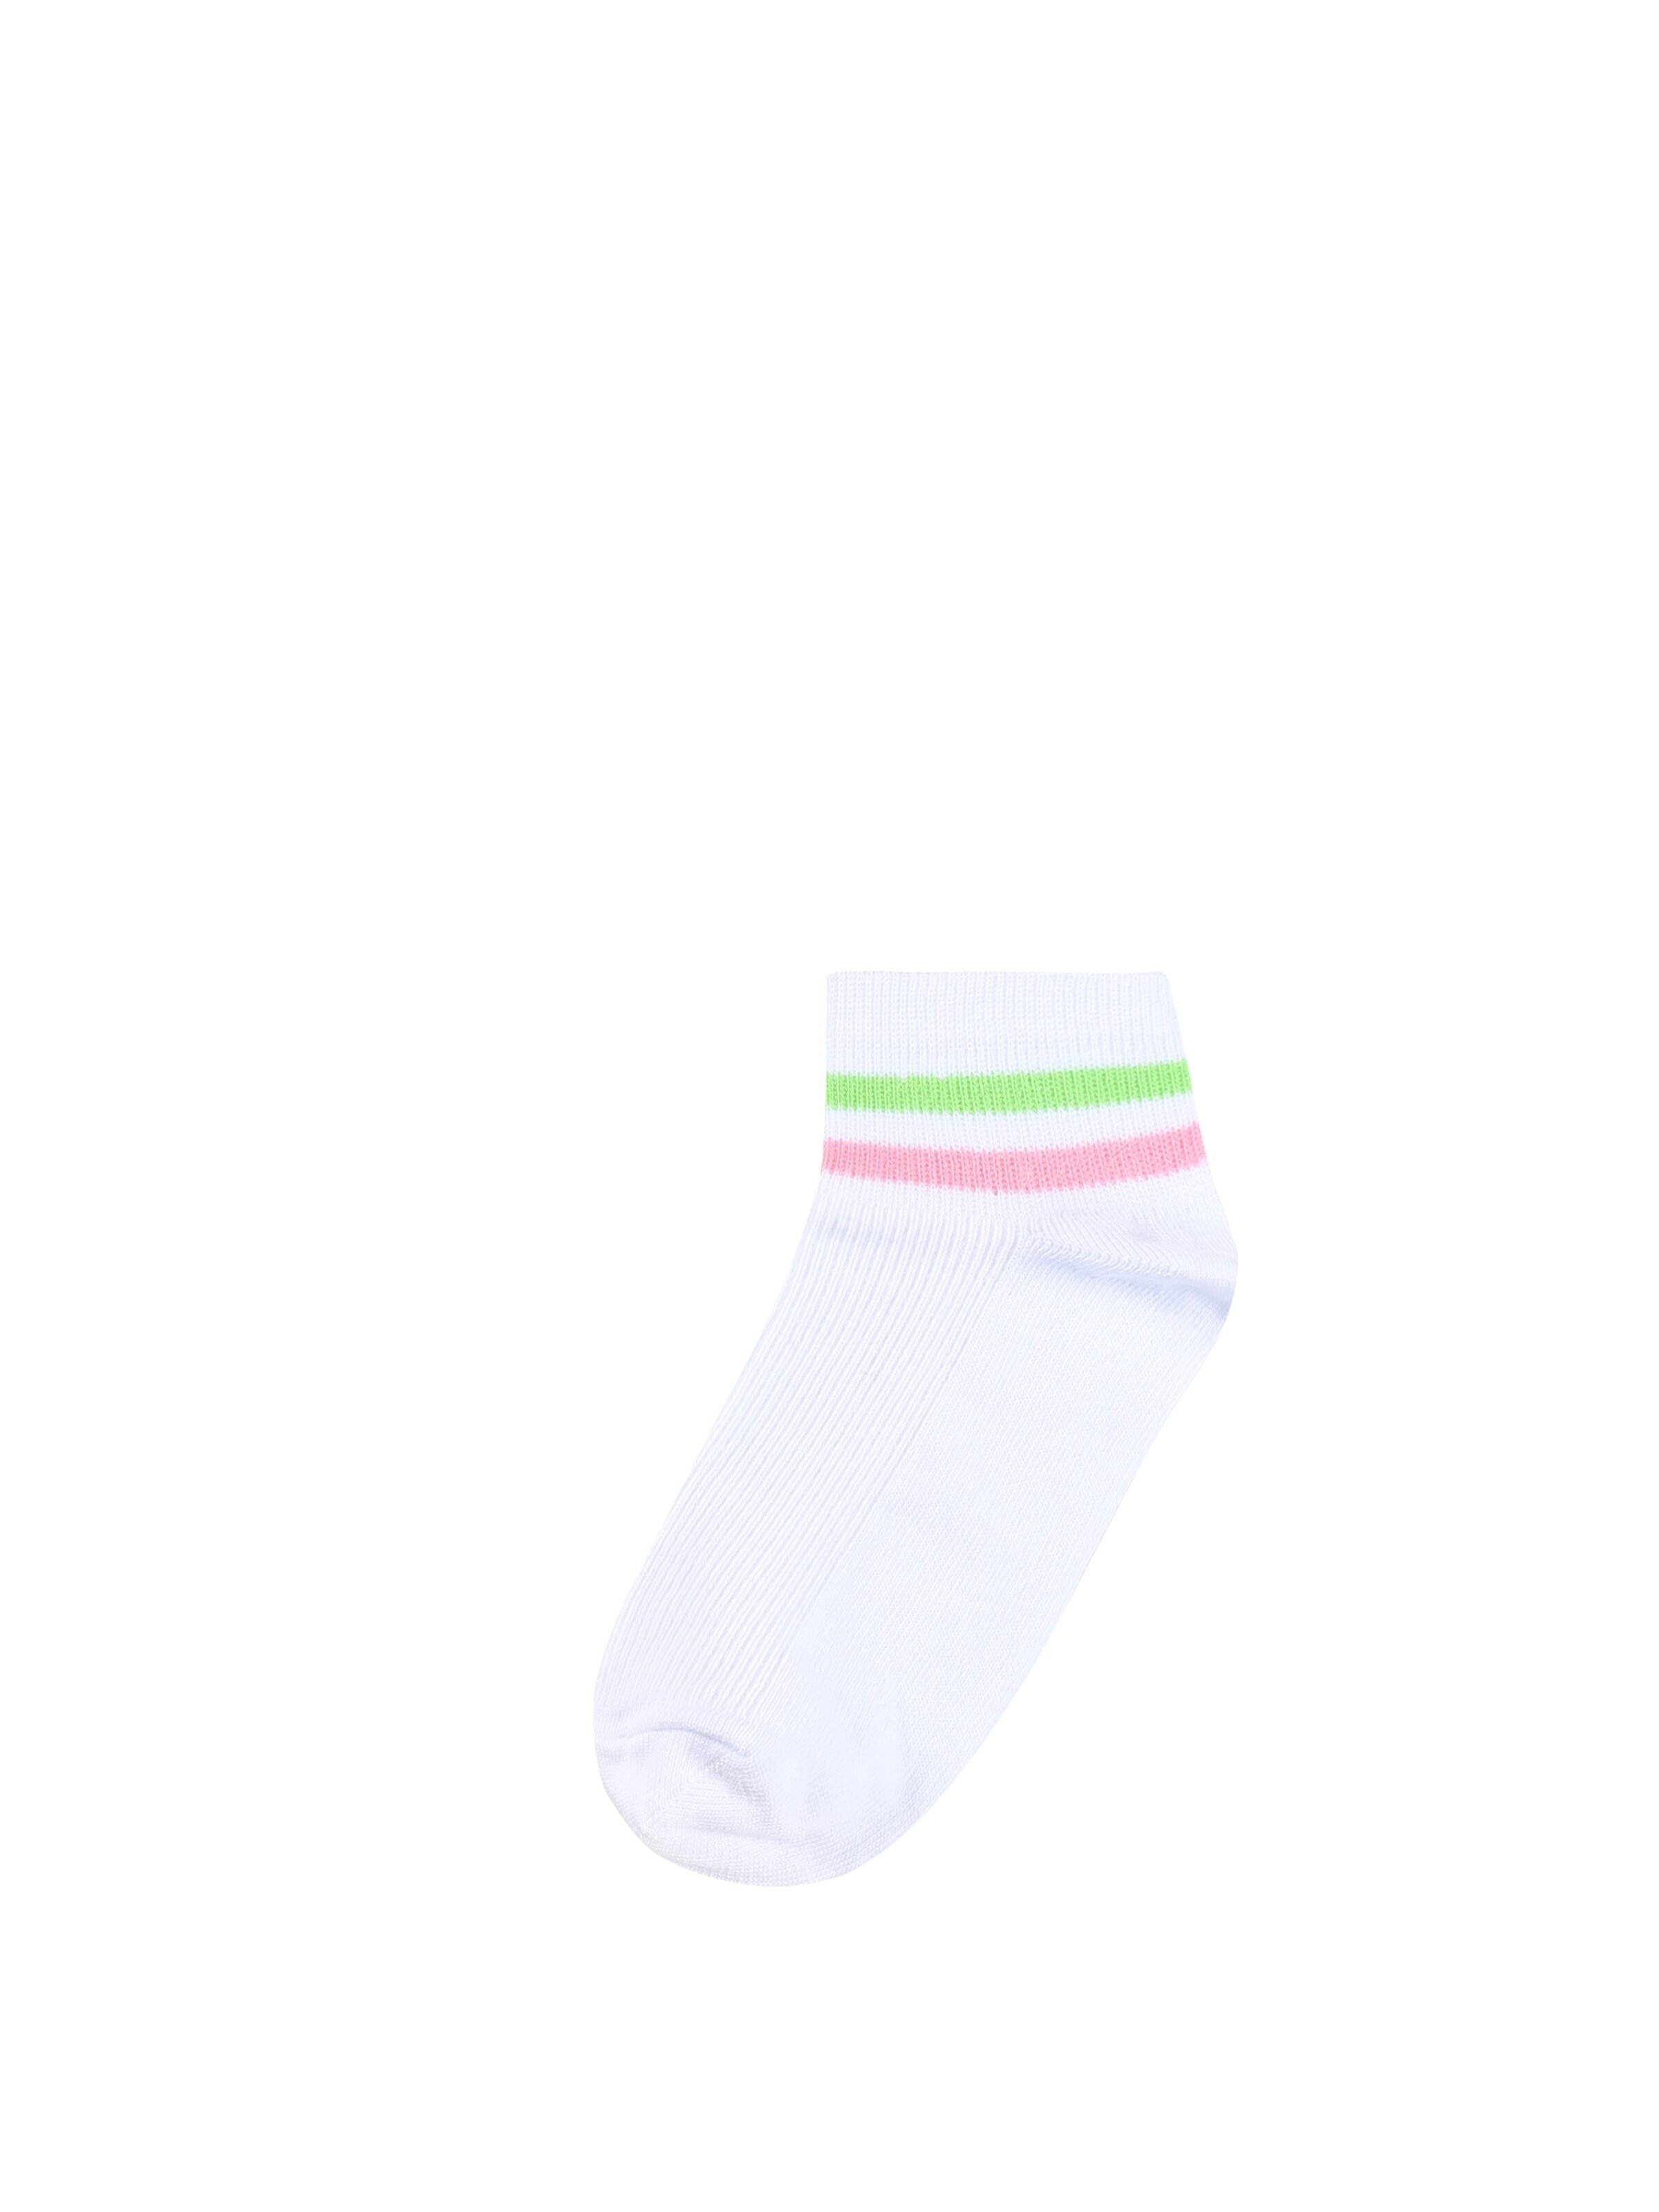 Показати інформацію про Шкарпетки Жіночі Білі Cl1050634